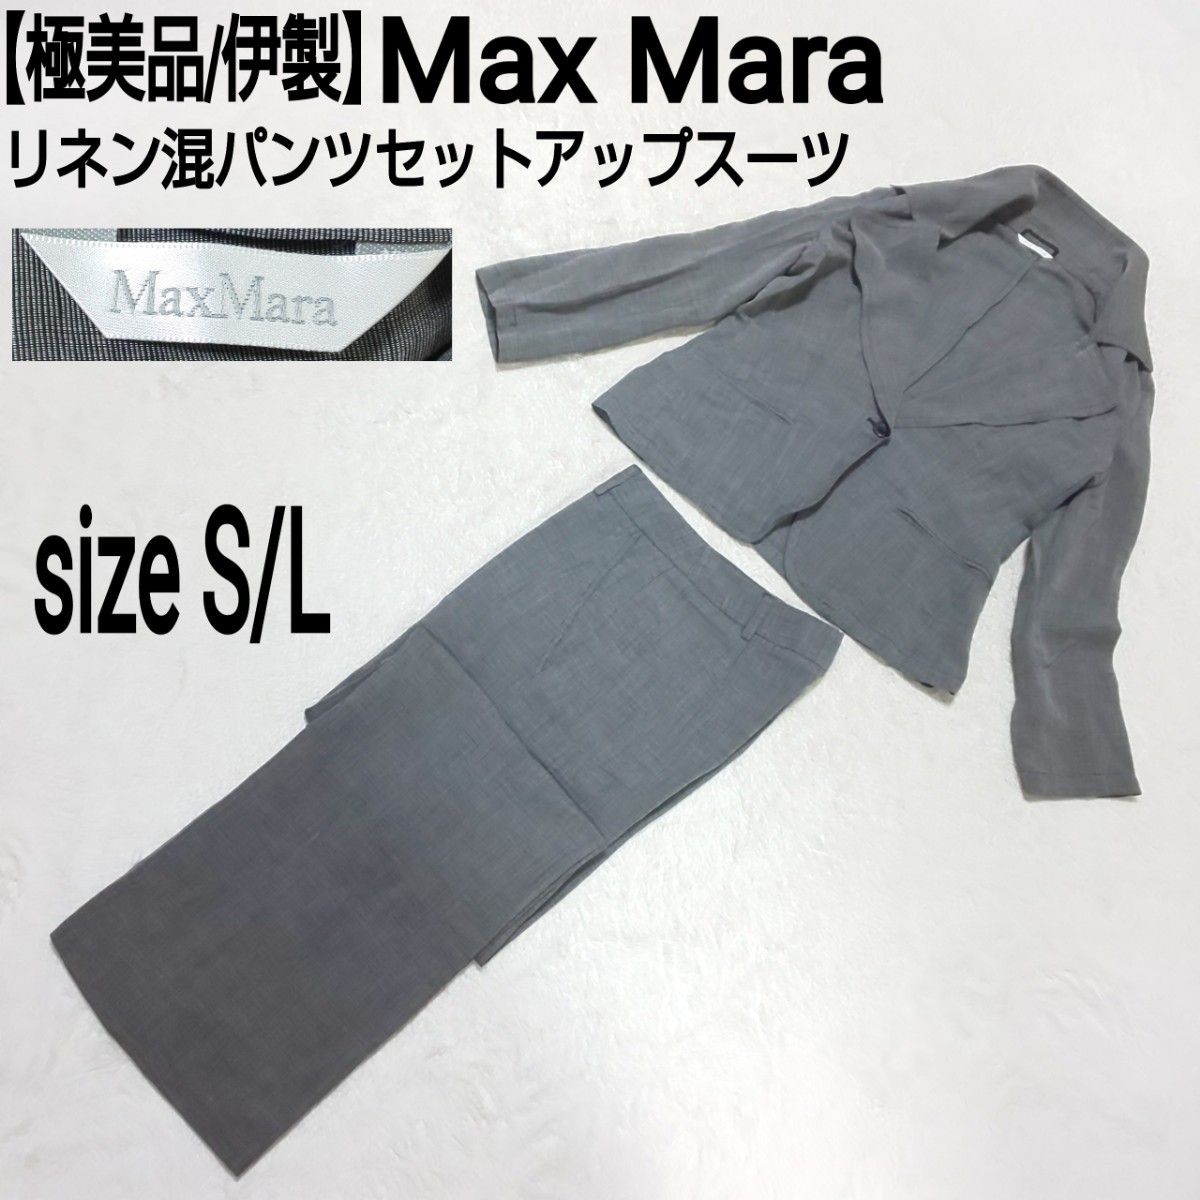 極美品/伊製 Max Mara マックスマーラ シングルボタン リネン混パンツセットアップスーツ 1Bテーラードジャケット グレー S/L レディース_画像1